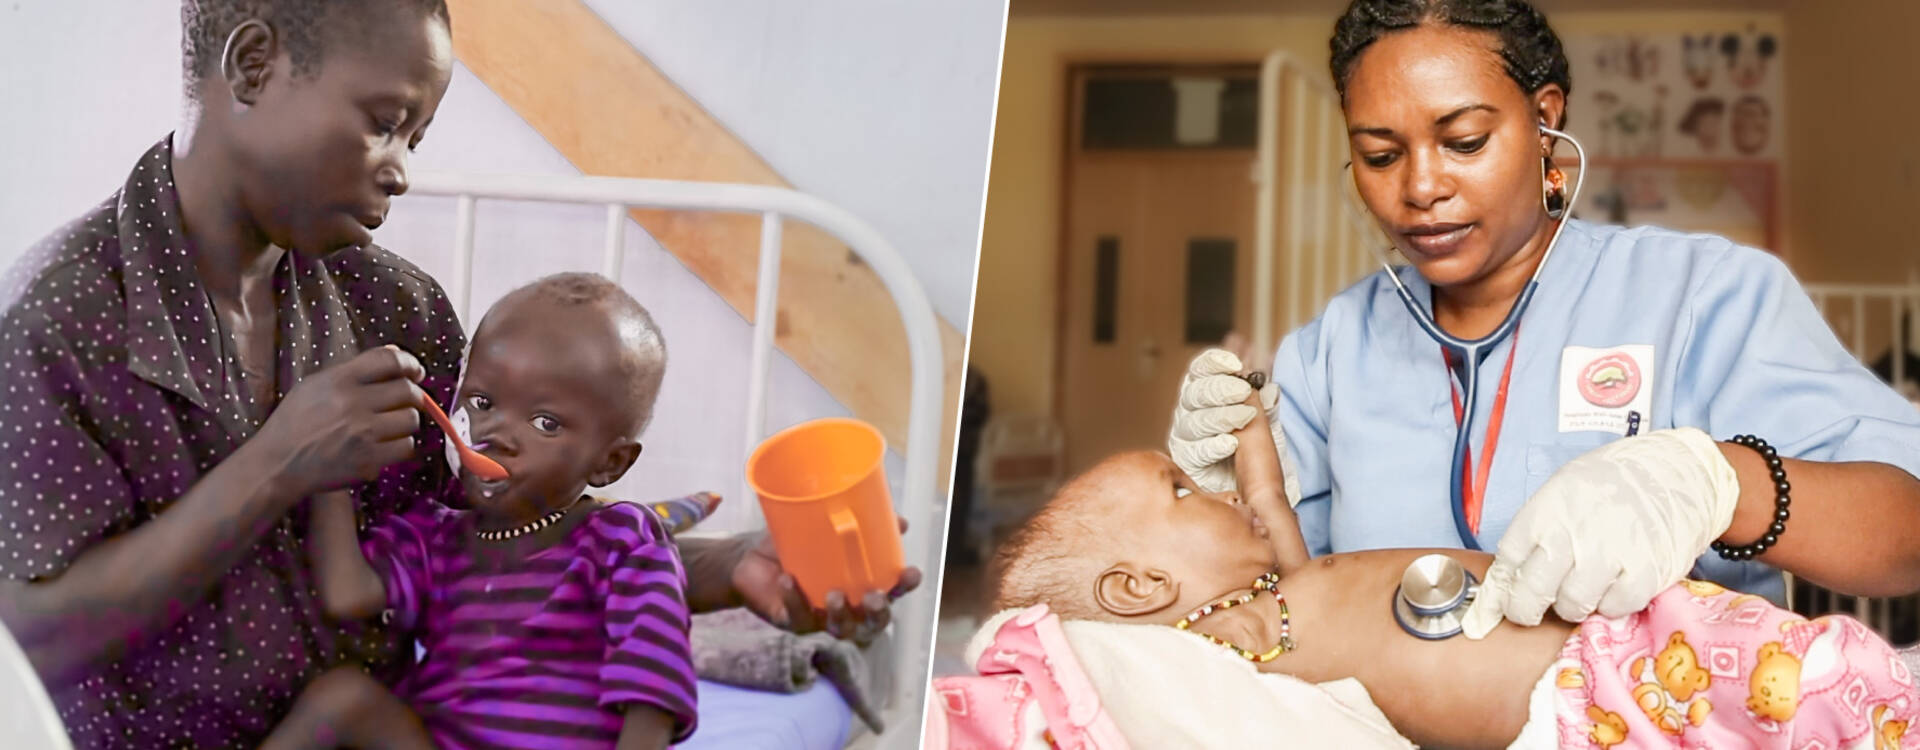 Mutter füttert mangelernährtes Kind in einer Gesundheitsstation von Aktion gegen den Hunger/Ärztin untersucht Kleinkind in einer Gesundheitsstation